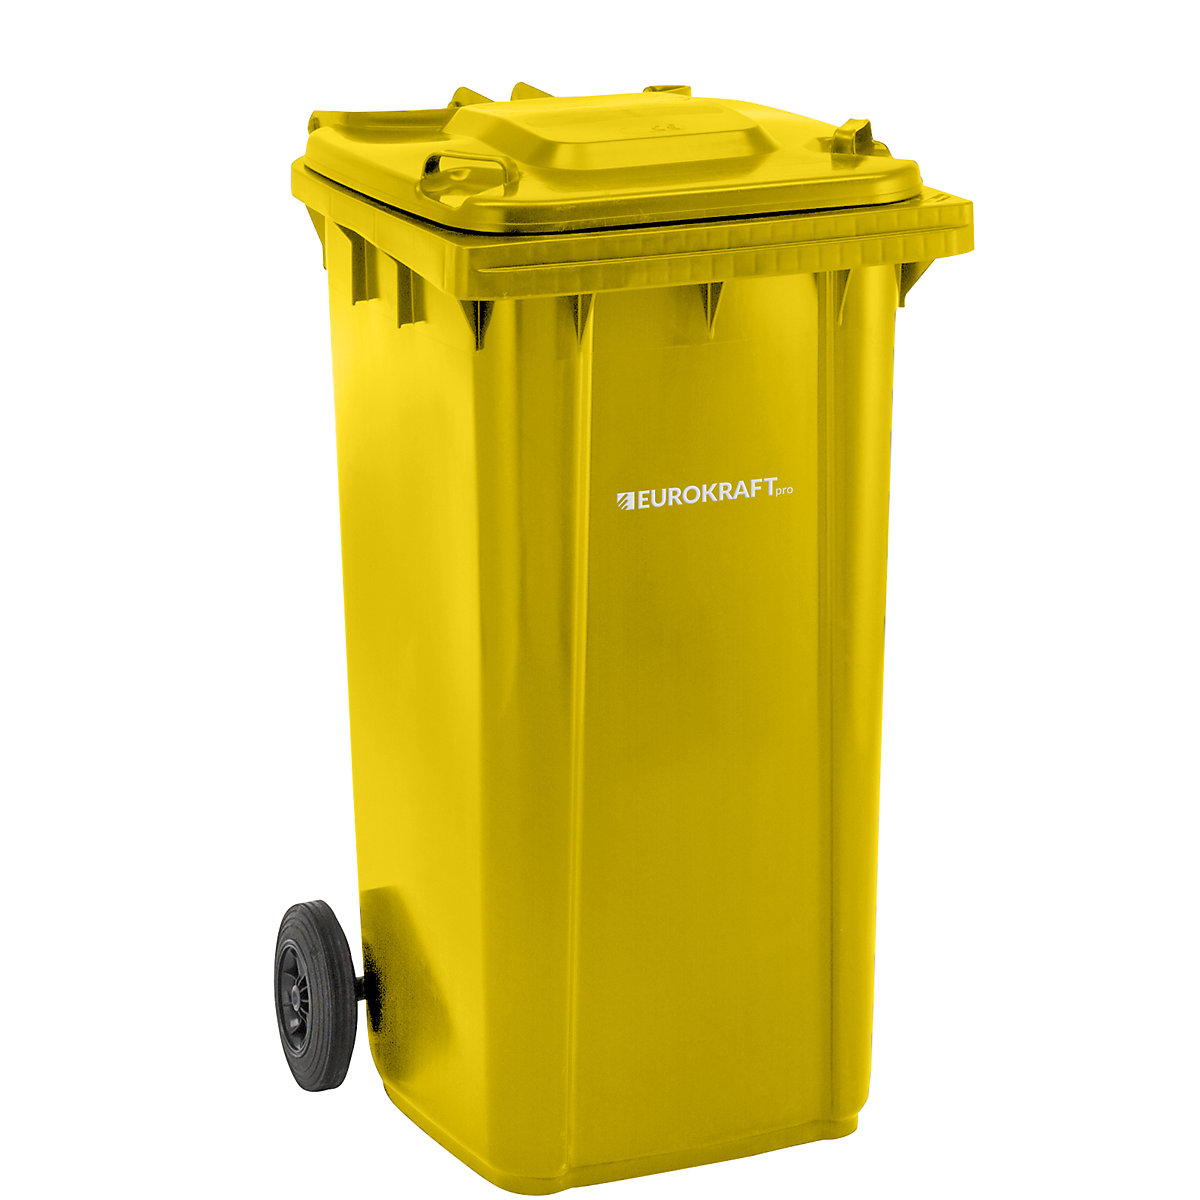 EUROKRAFTpro – Plastic waste bin, DIN EN 840, capacity 240 l, WxHxD 580 x 1100 x 740 mm, yellow